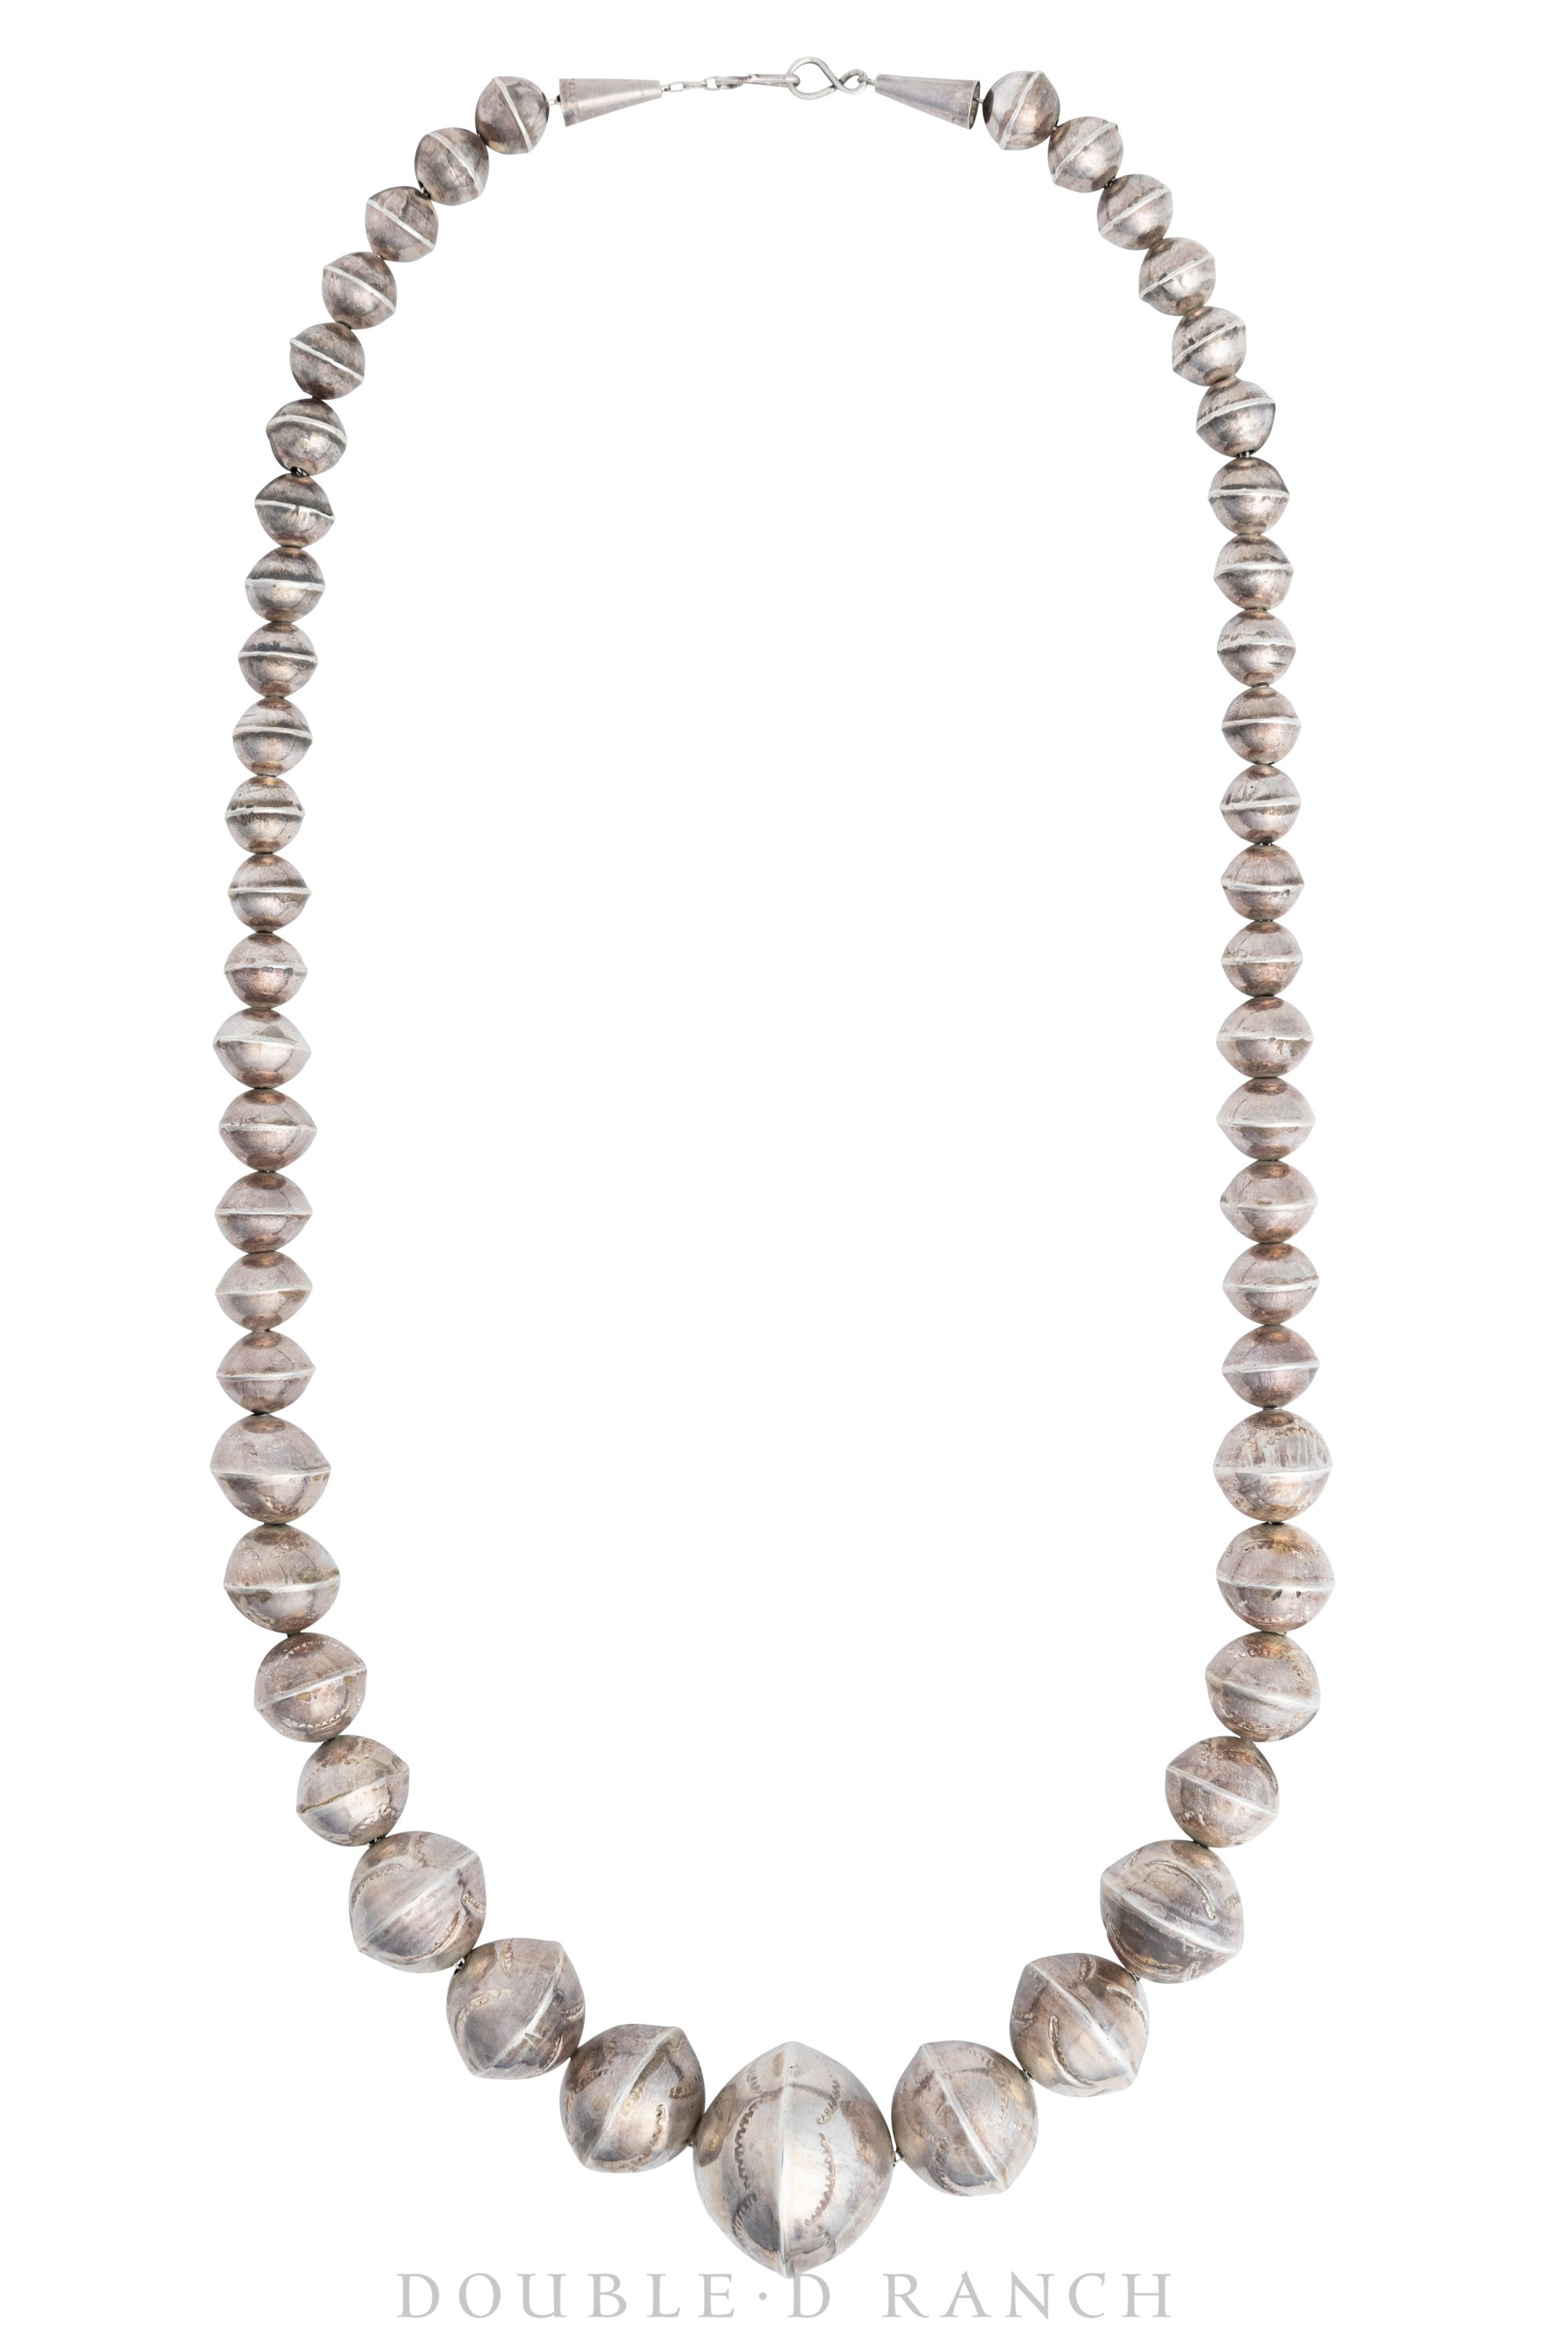 Necklace, Desert Pearls, Sterling Silver, Vintage, 2998